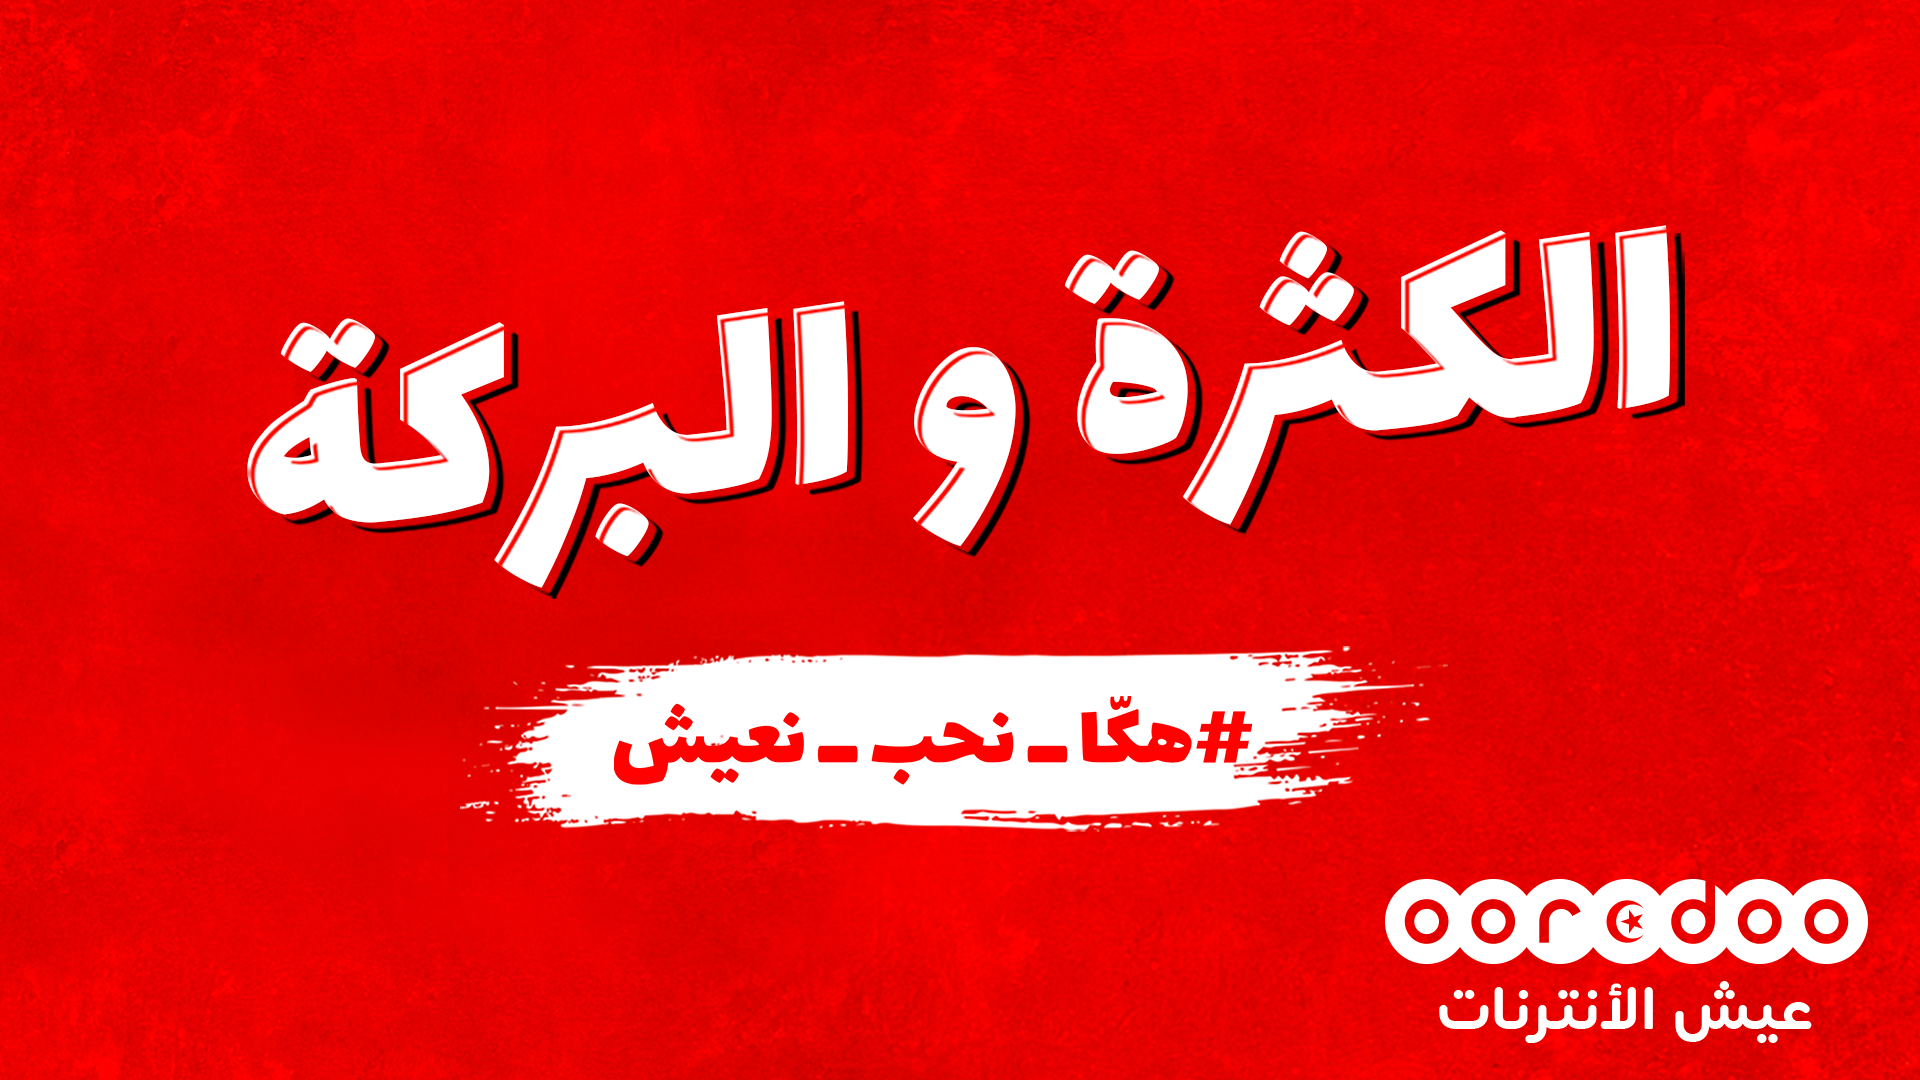 Ooredoo lance la campagne “Hakka N7eb N3ich” pour répandre la positivité